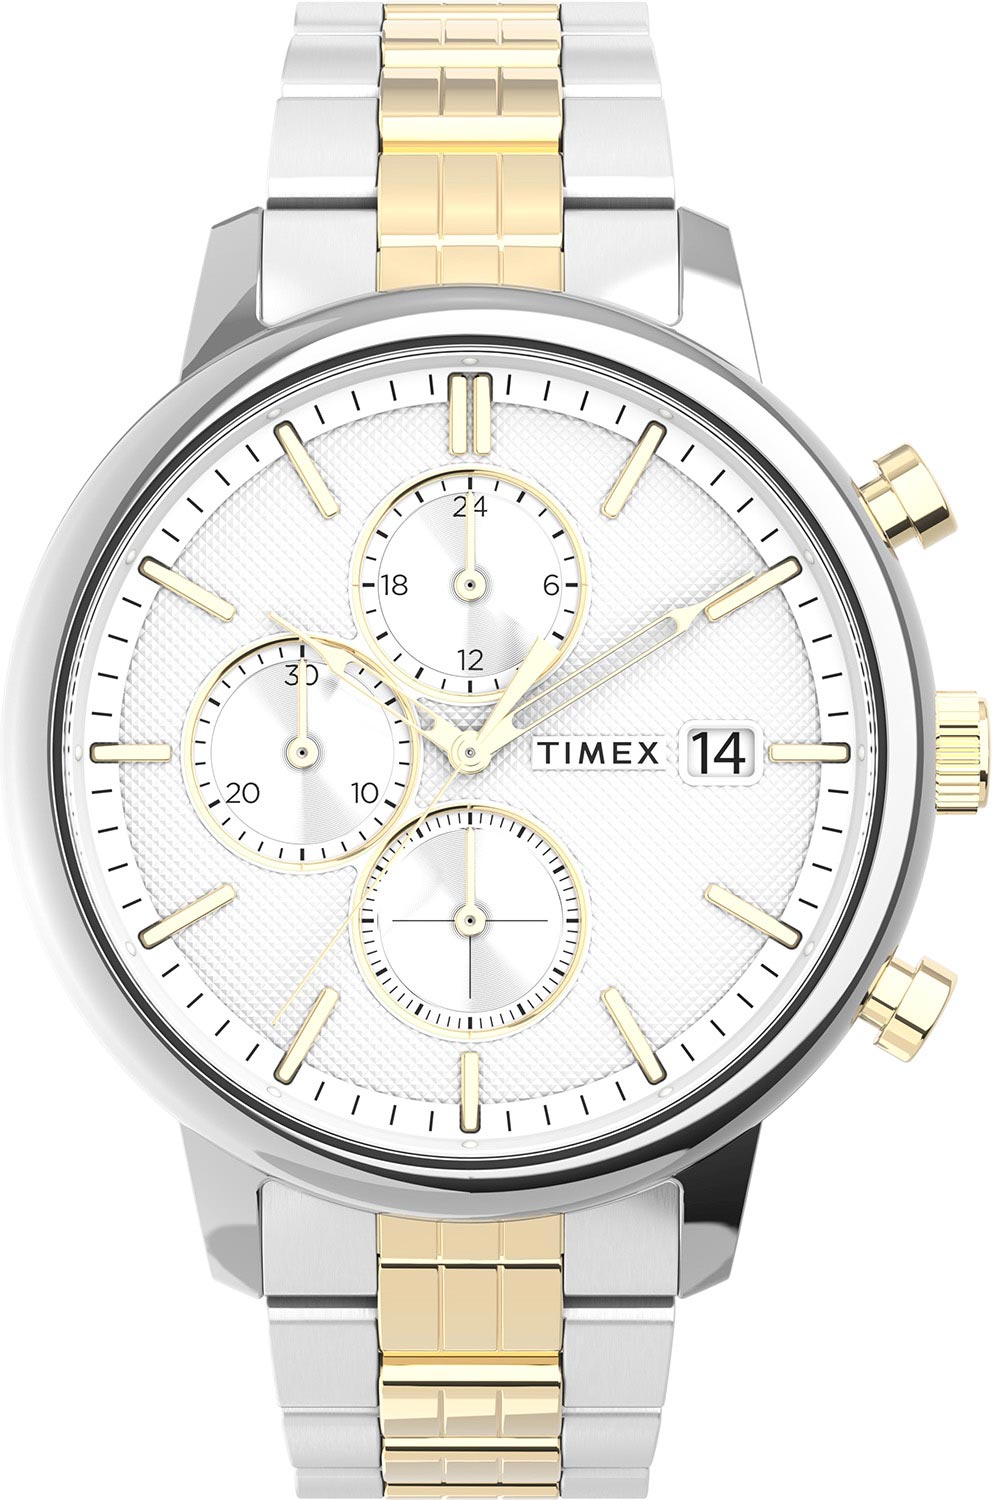 Наручные часы Timex TW2V01800 наручные часы timex chicago наручные часы timex tw2v01800 серебряный